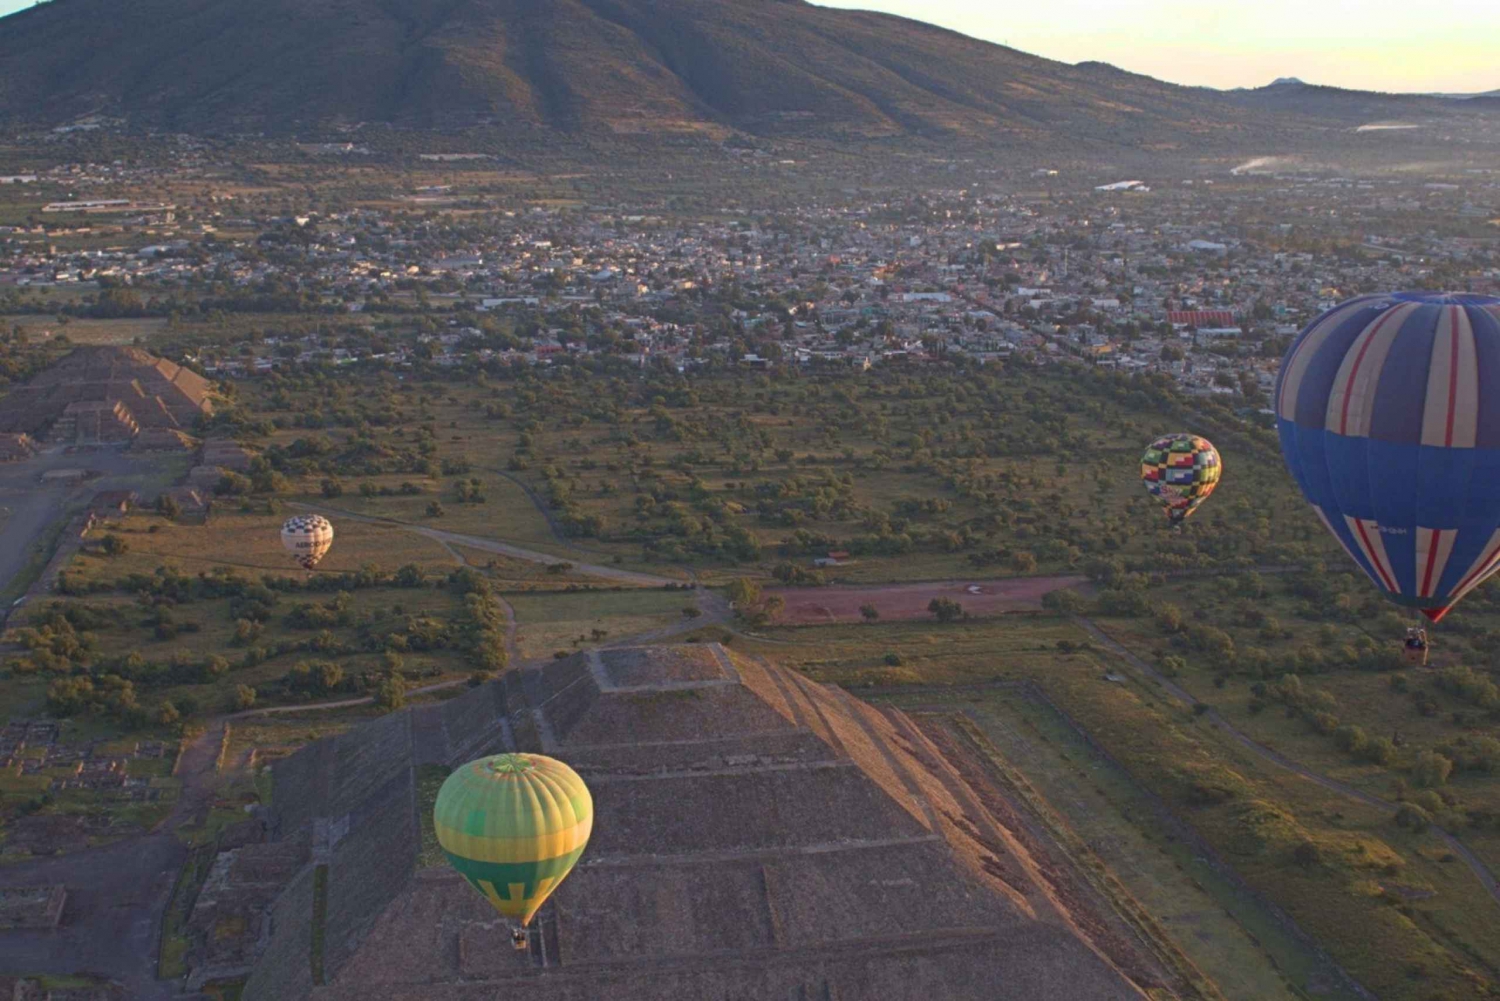 Teotihuacán: Hot Air Balloon Flight over Ancient Ruins